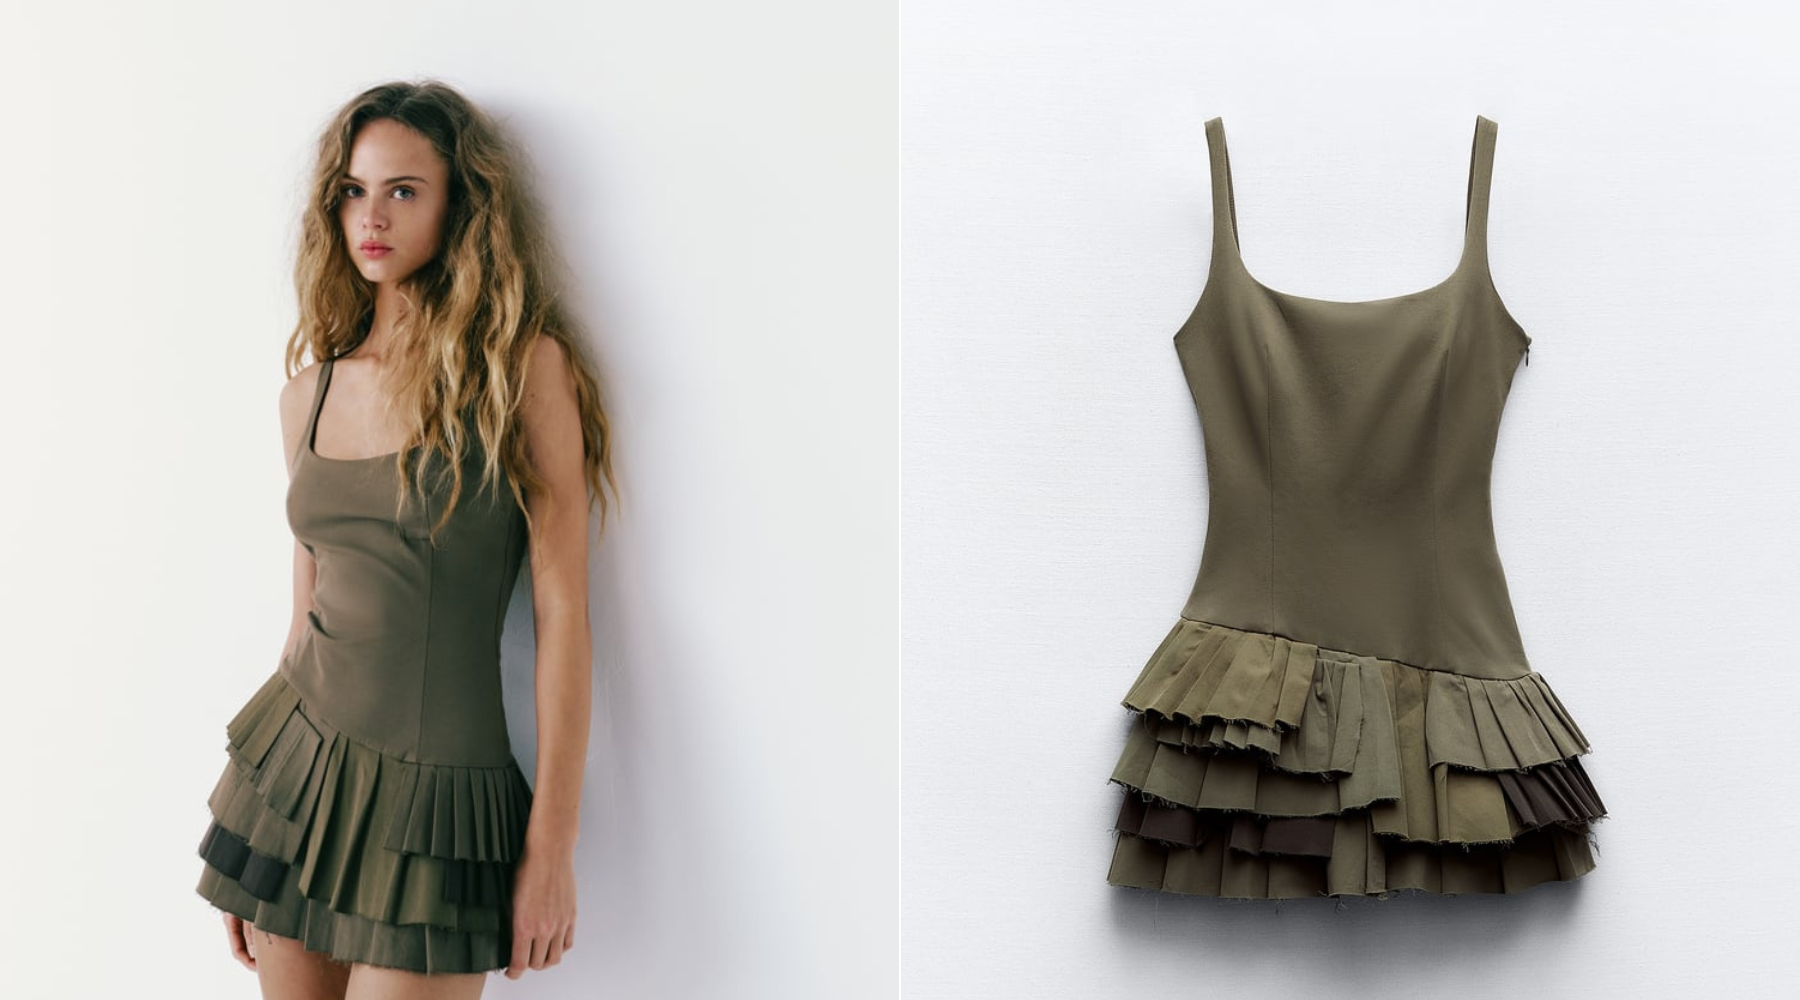 Viralna mini haljina iz Zare dostupna je i kod nas – da li će ovaj model biti najpopularniji prolećni trend?